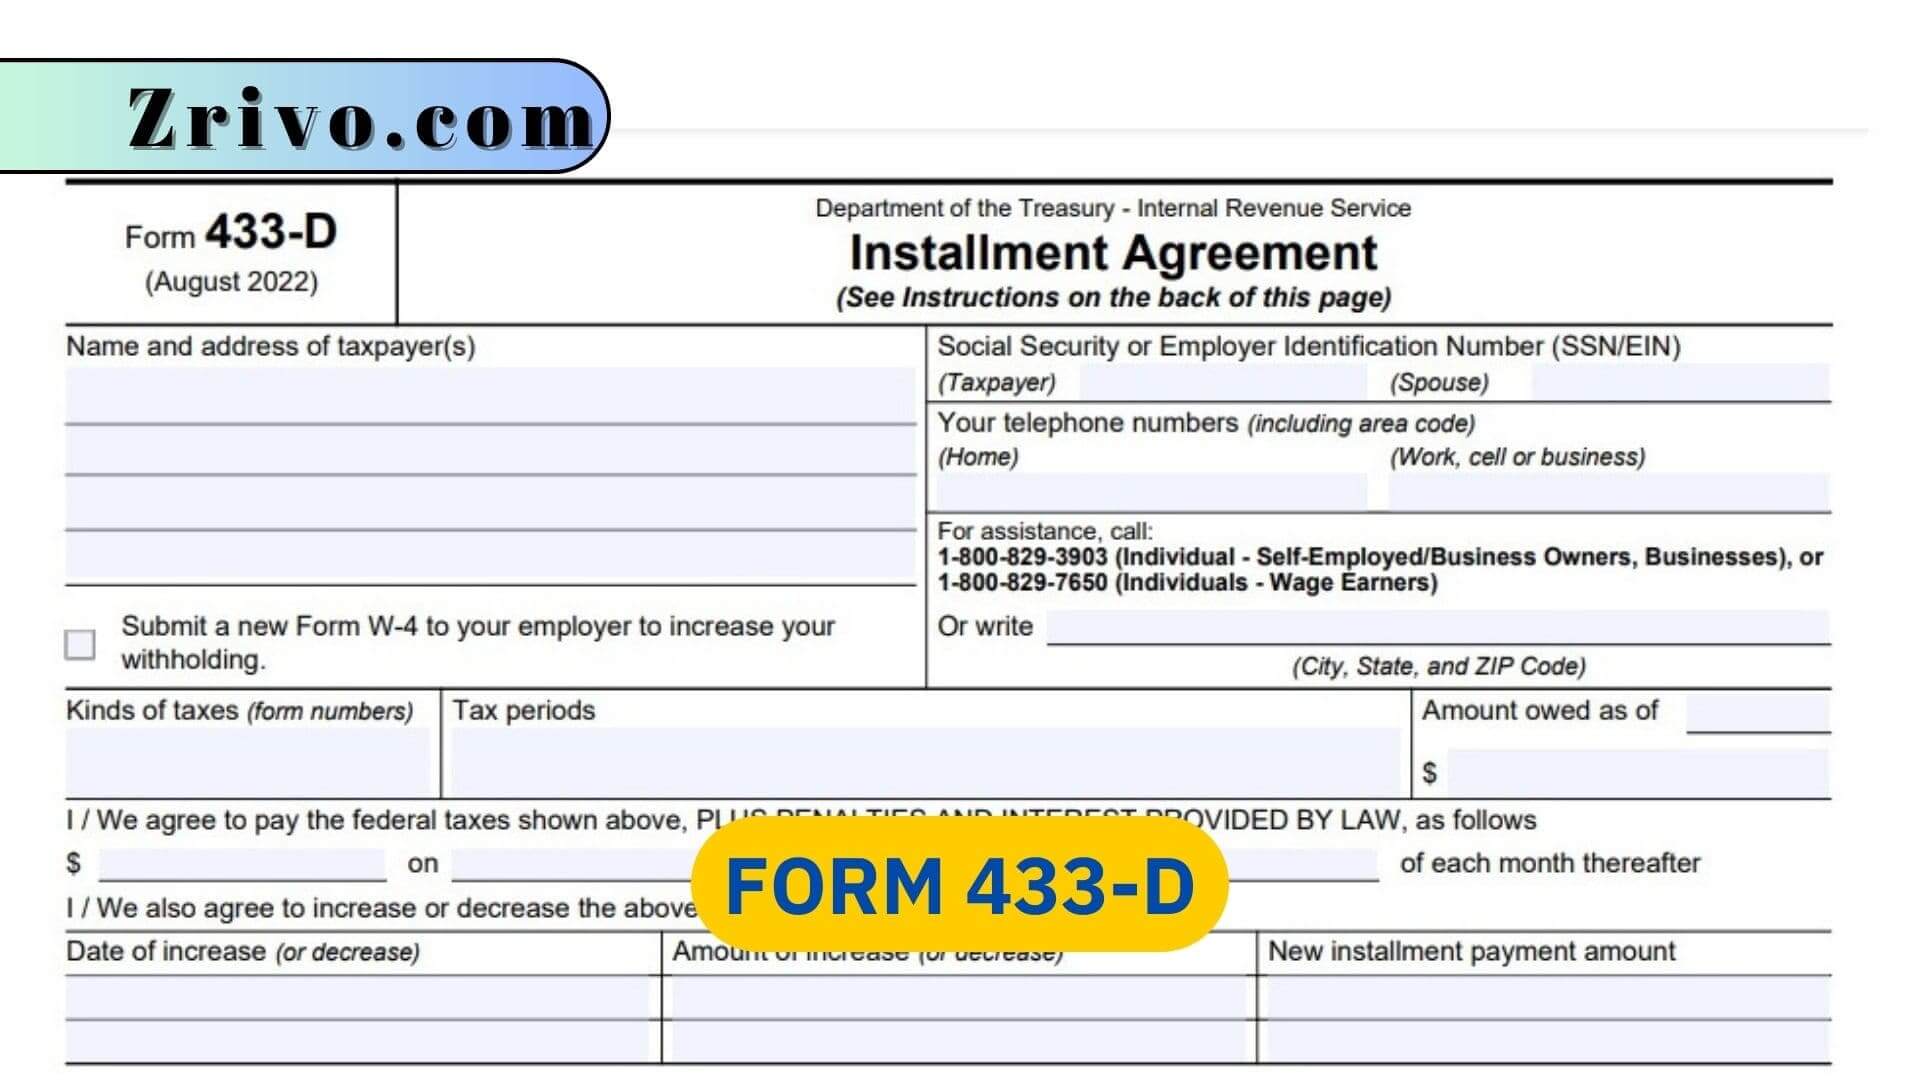 Form 433-D